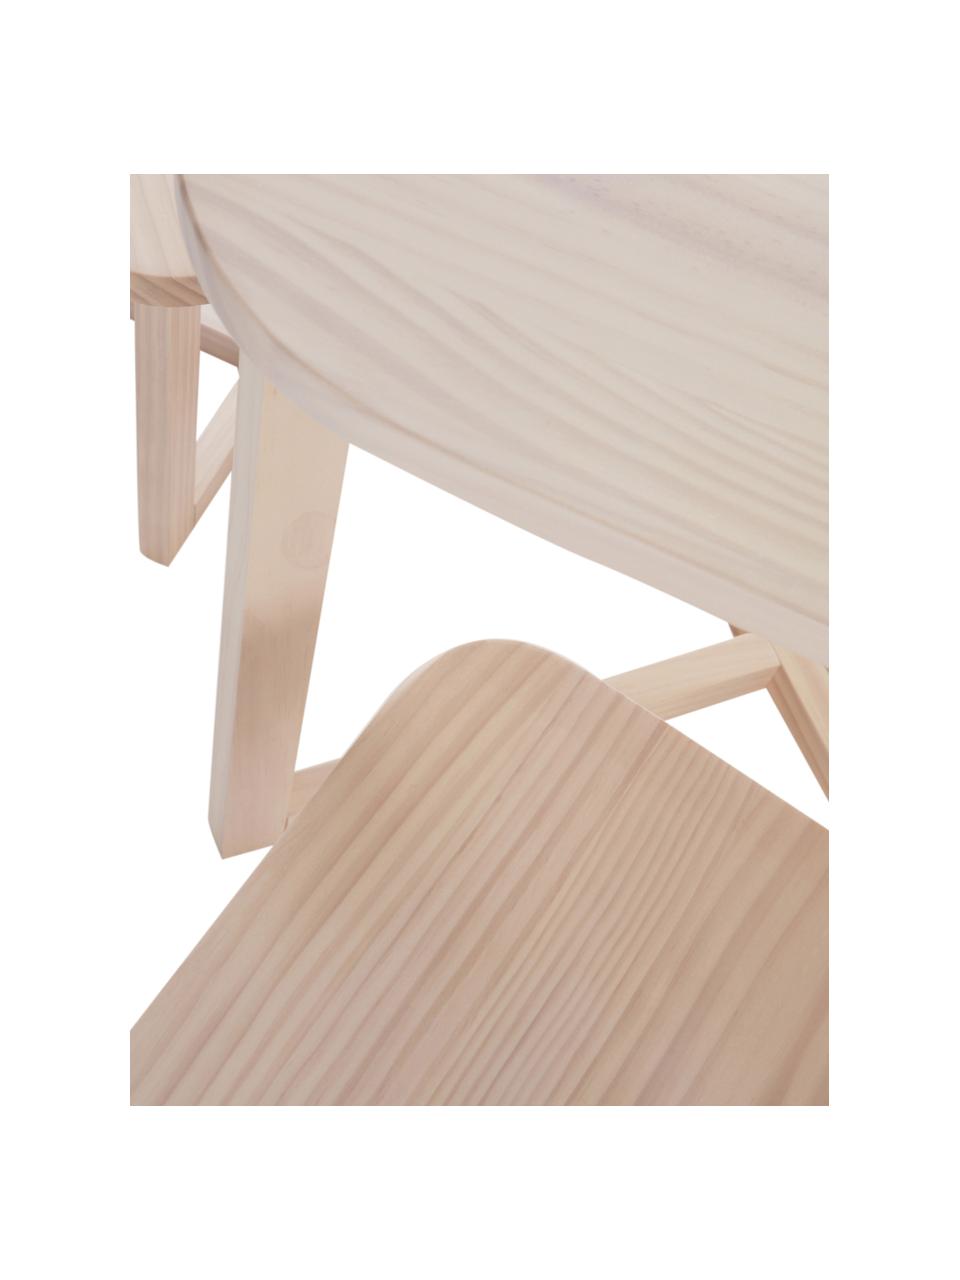 Súprava detských stolíkov z dreva Benny, 3 diely, Borovicové drevo s FSC certifikátom, Borovicové drevo, Súprava s rôznymi veľkosťami